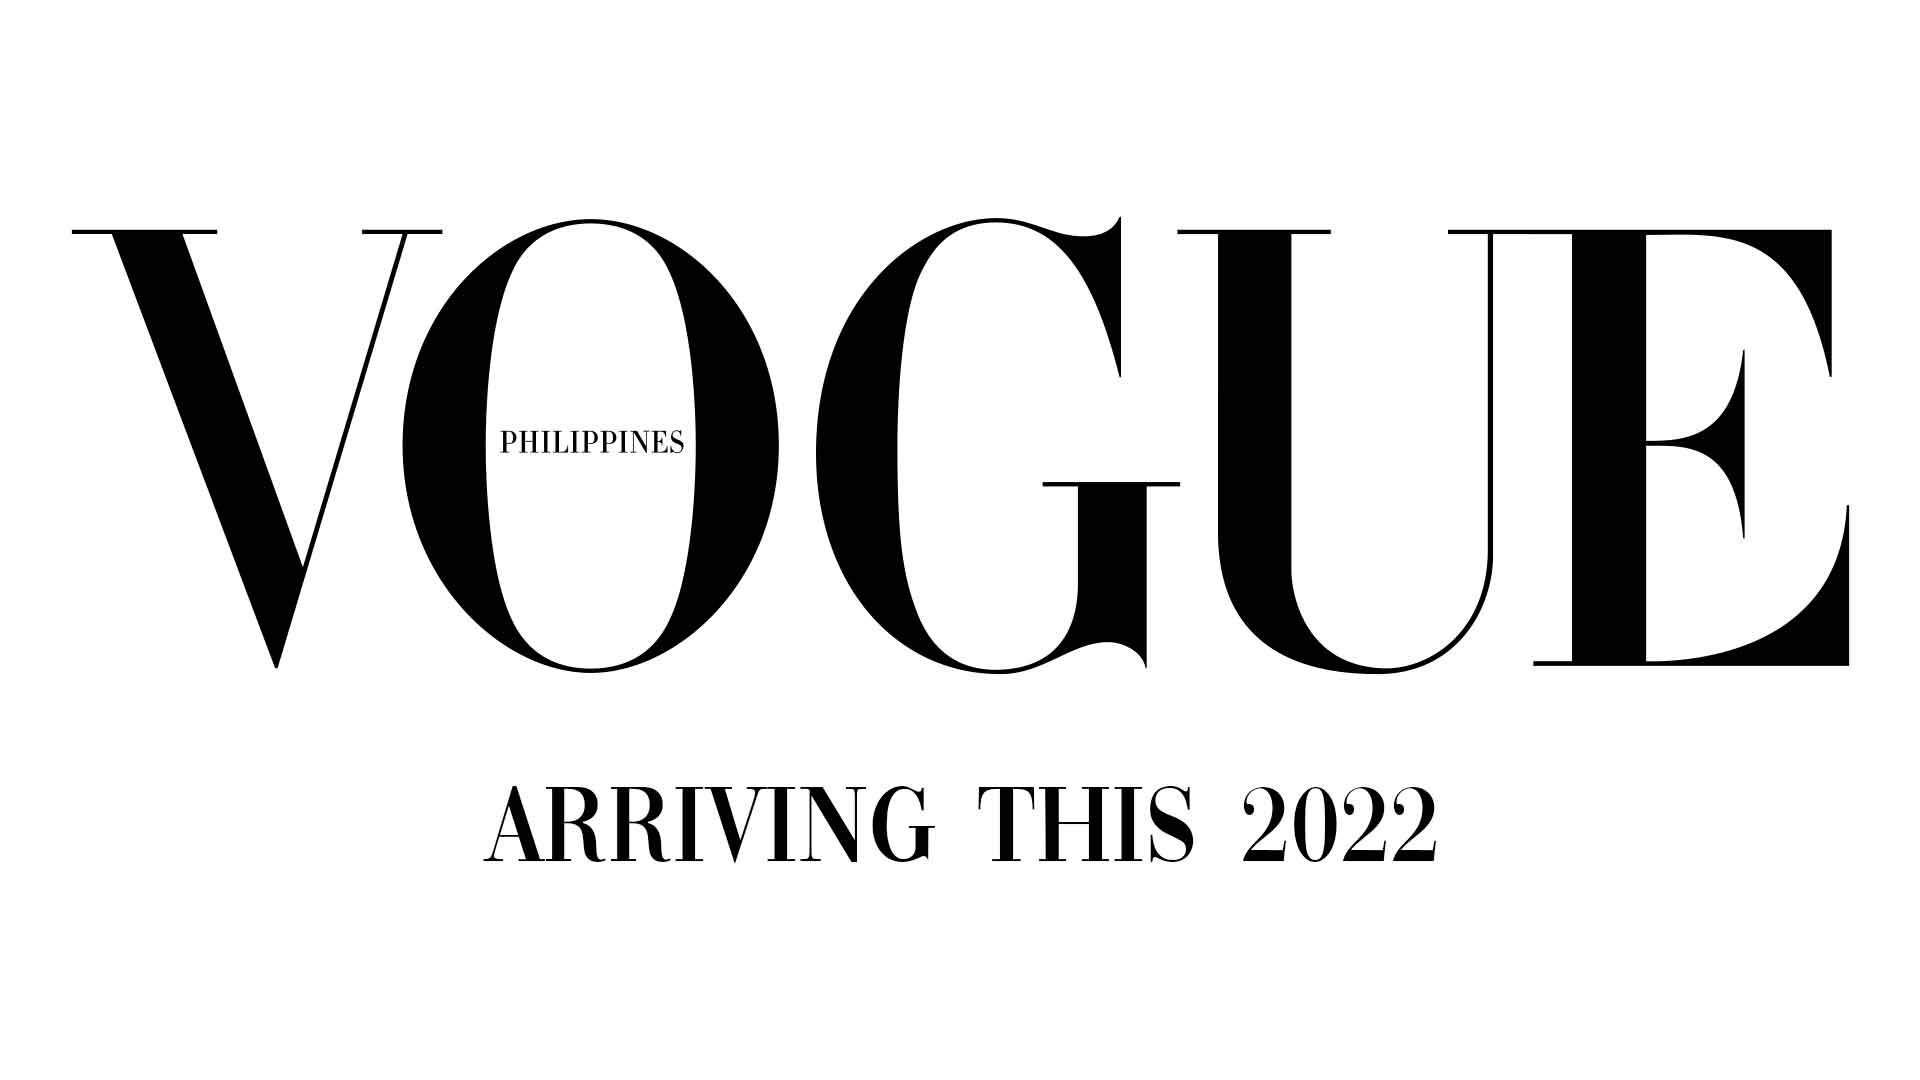 Vogue Philippines